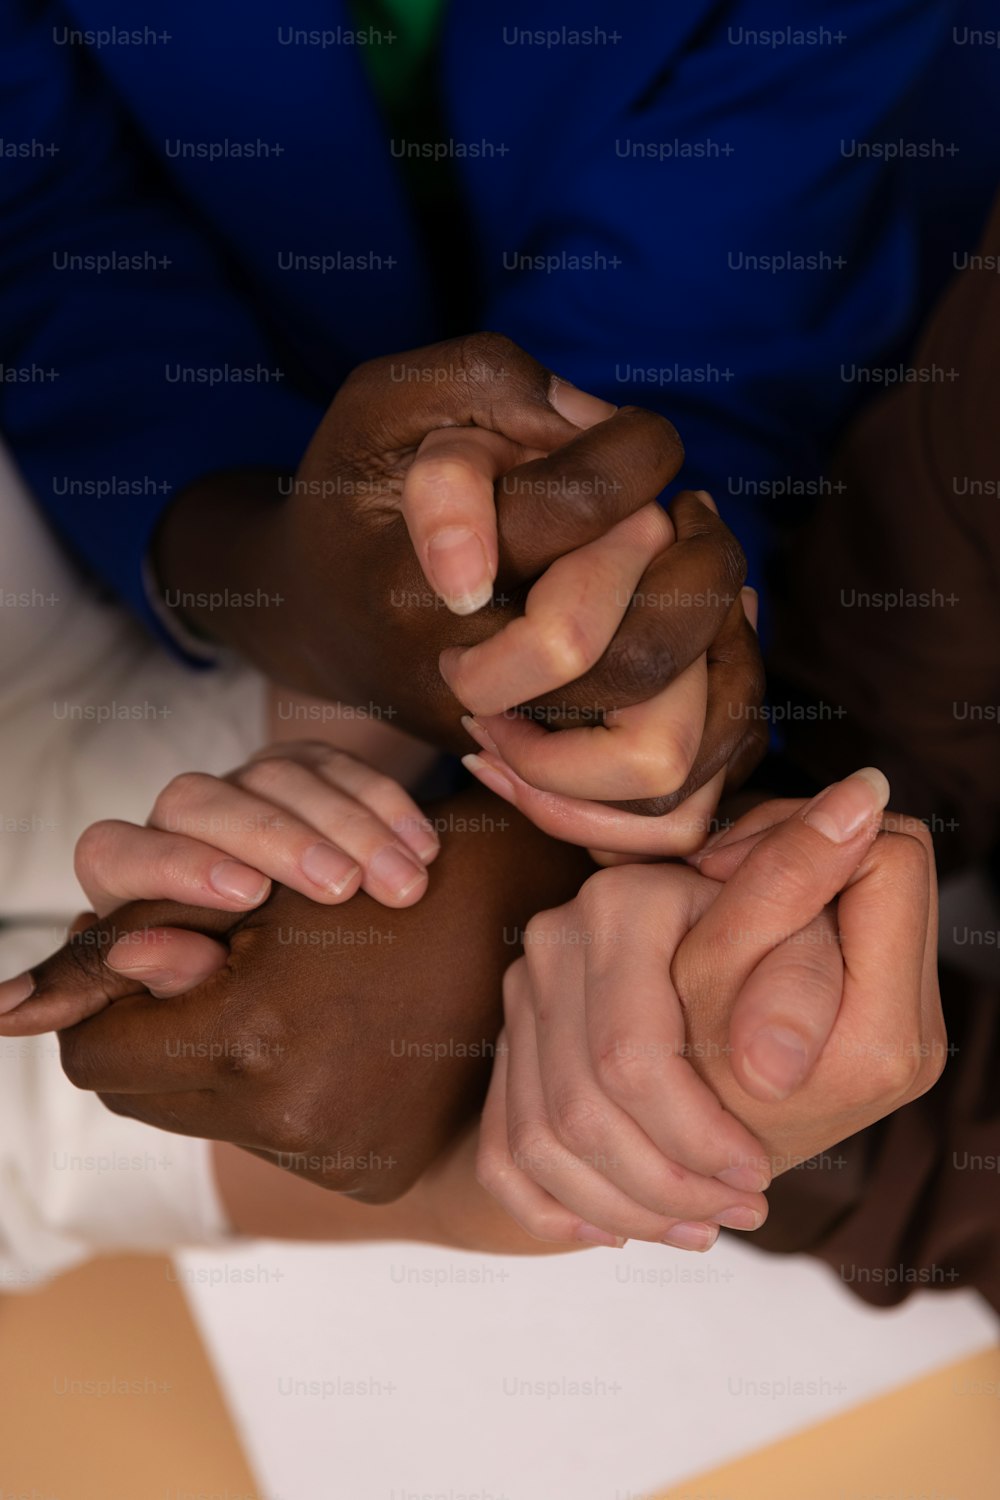 Un grupo de personas tomadas de la mano juntas